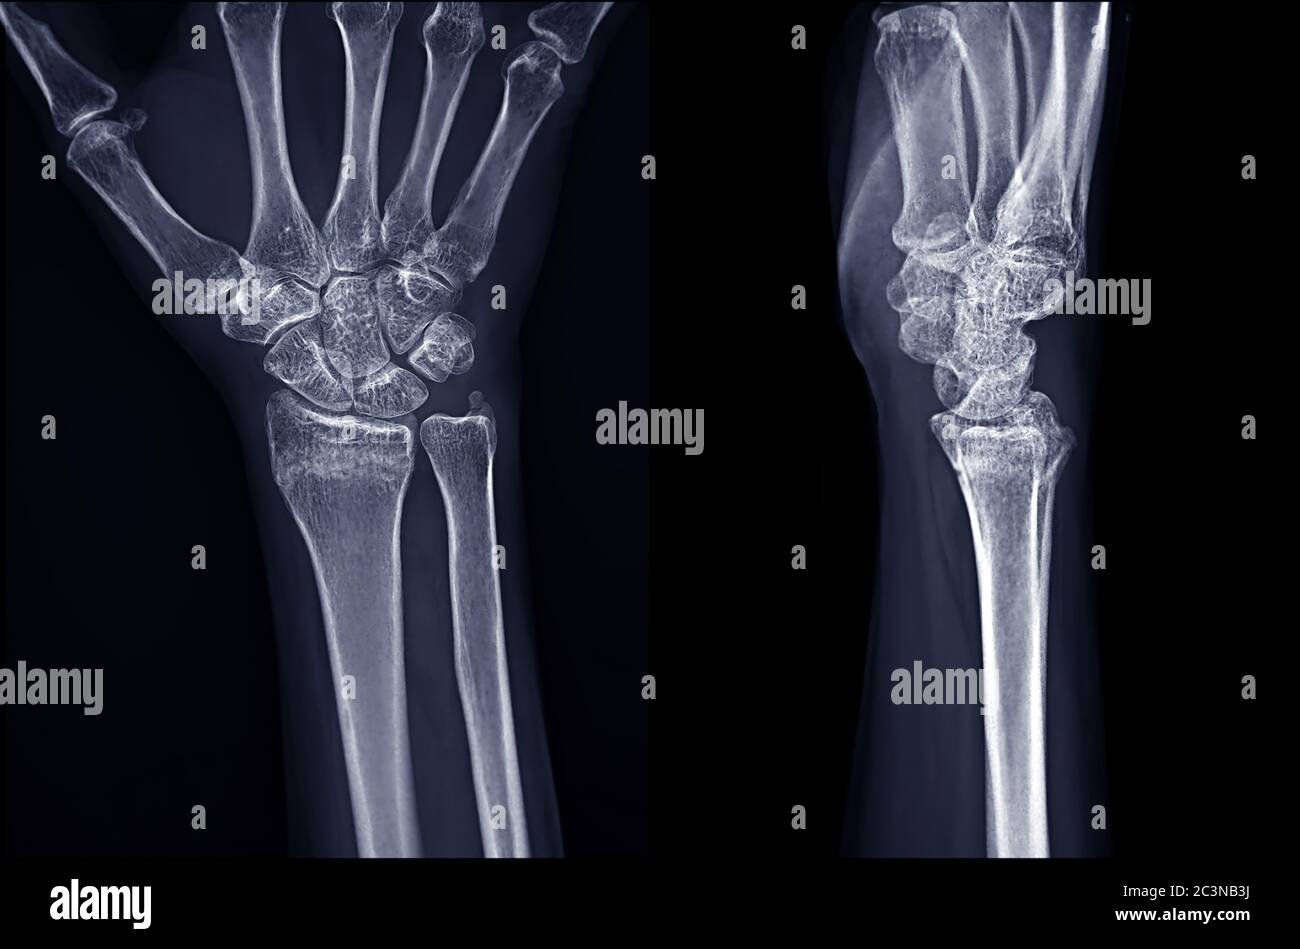 Immagine radiografica dell'articolazione del polso destro AP e vista laterale per la diagnosi dell'artrite reumatoide . Foto Stock